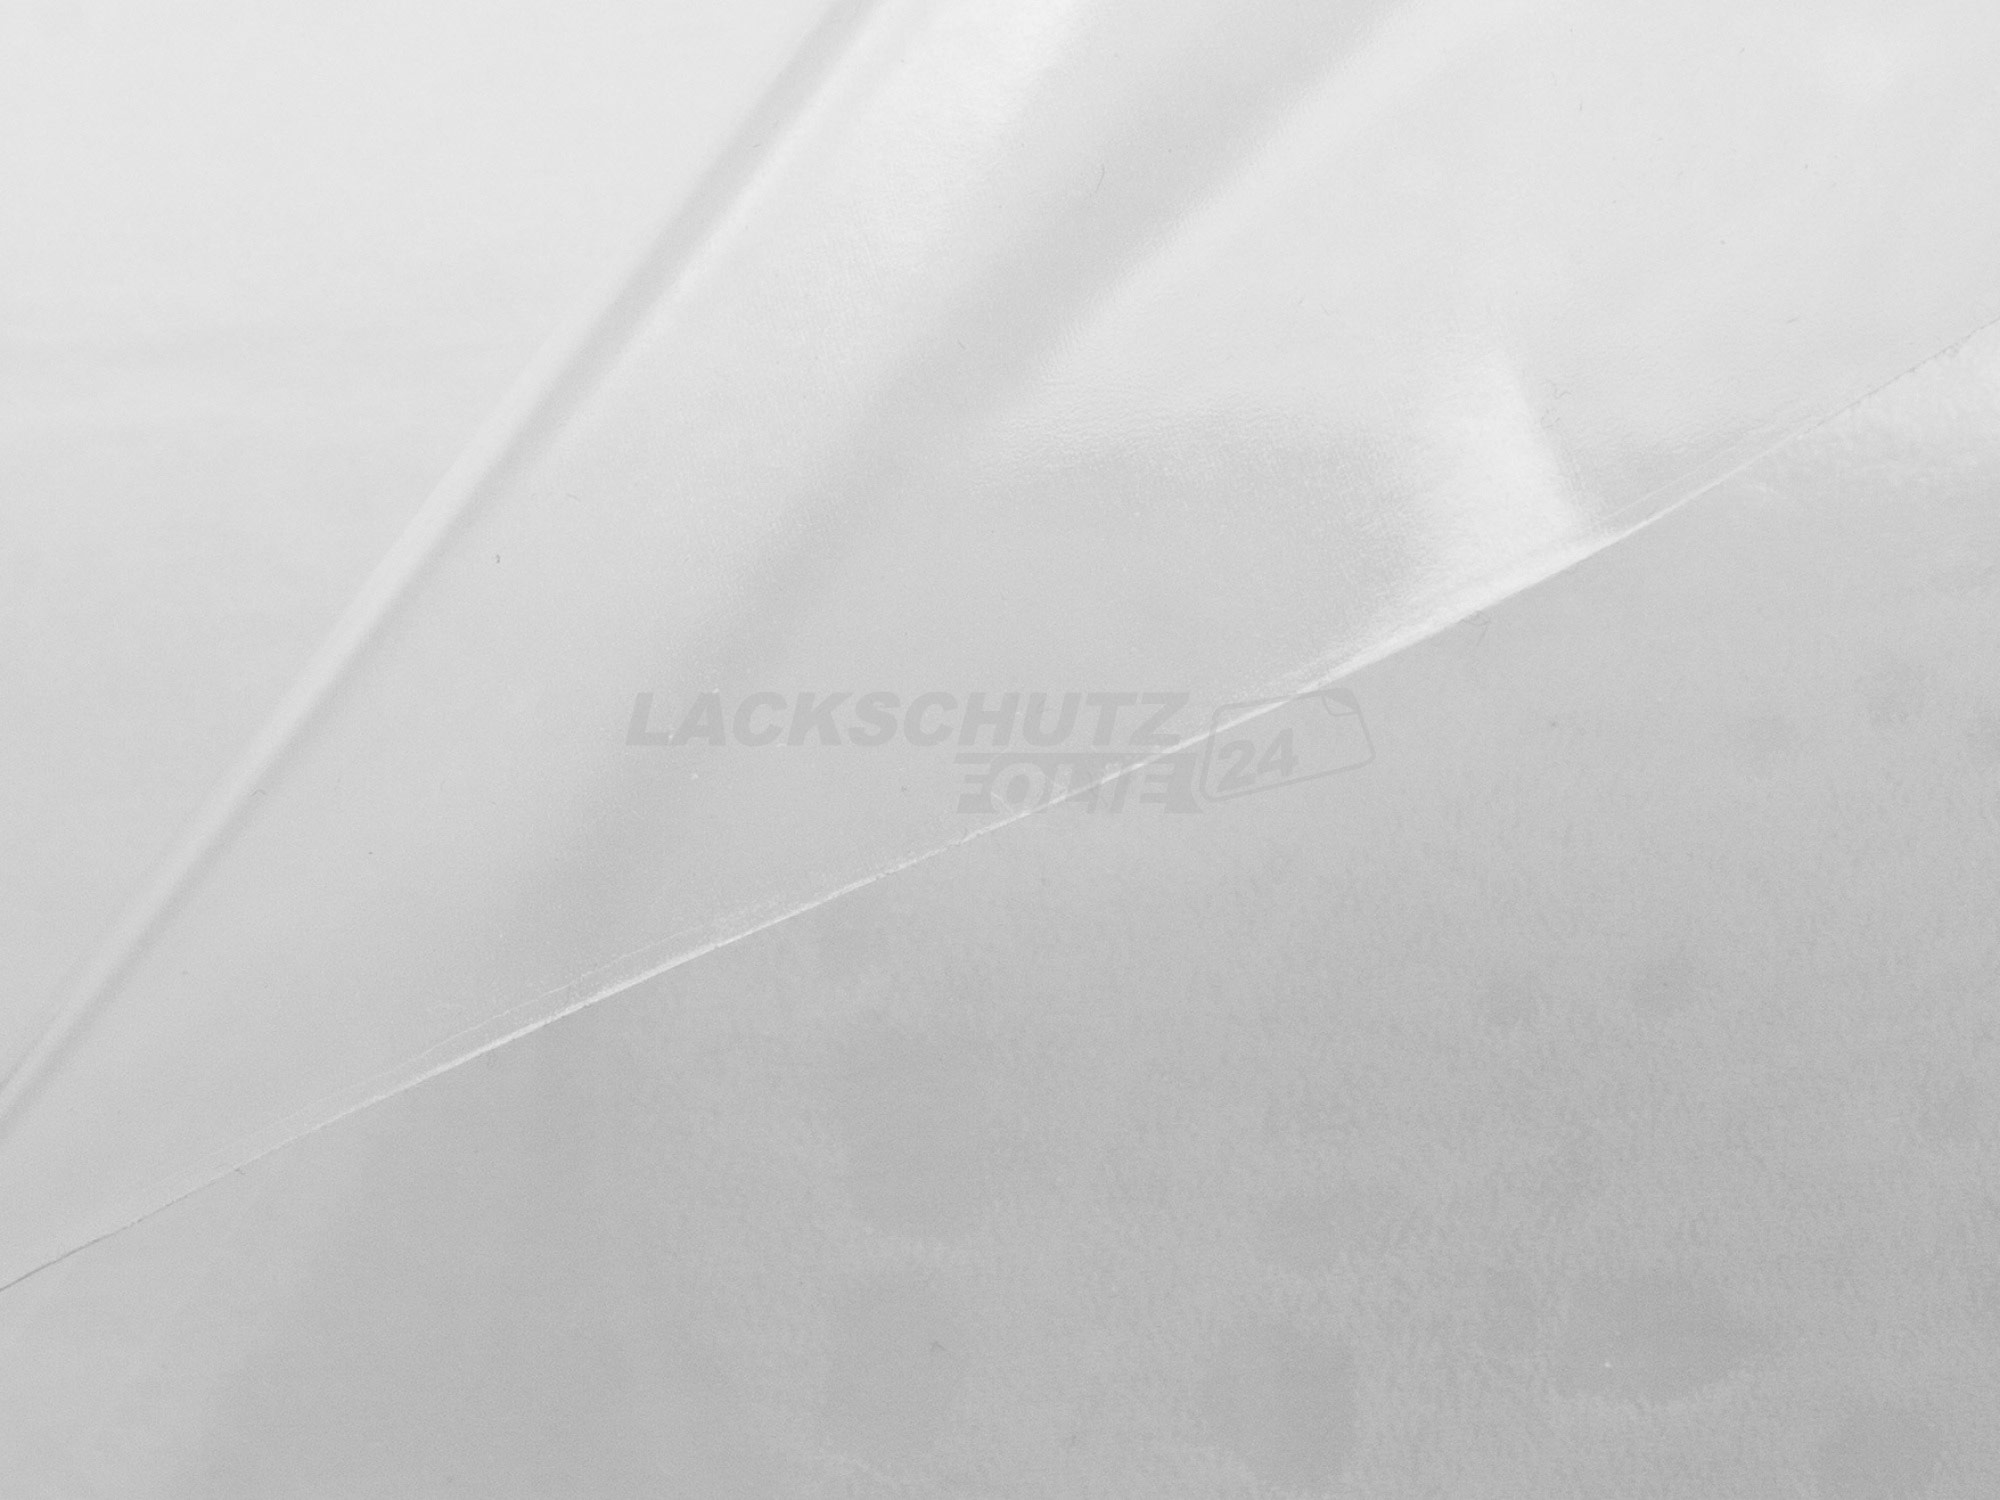 Ladekantenschutzfolie - Transparent Glatt Hochglänzend 240 µm stark für Skoda Karoq Sportsline, Facelift, ab BJ 11/2021